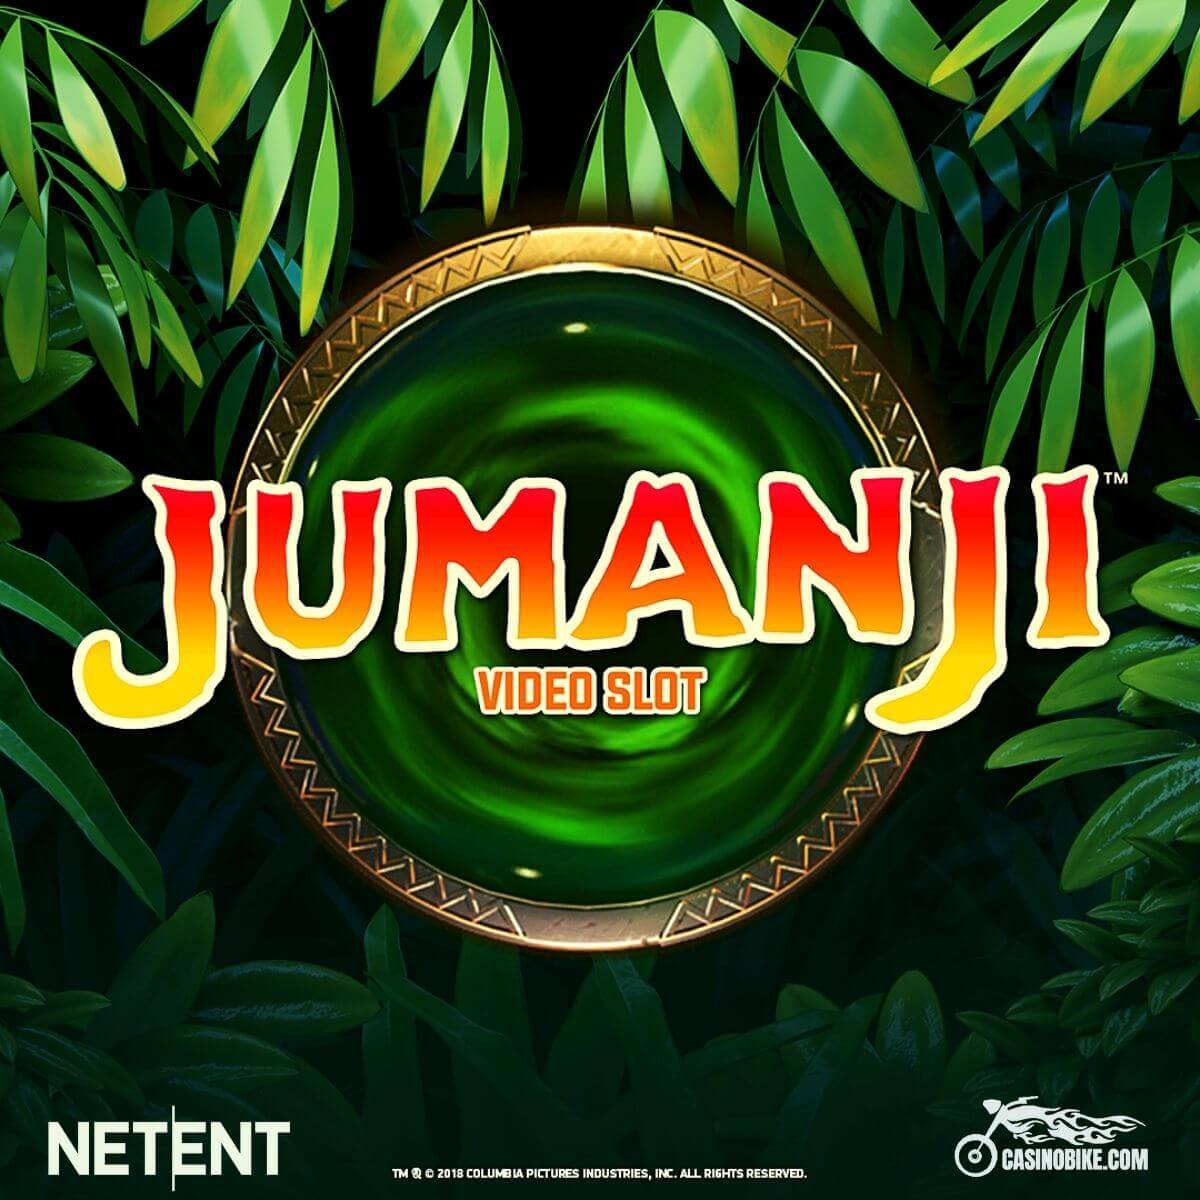 Jumanji Slot by NetEnt